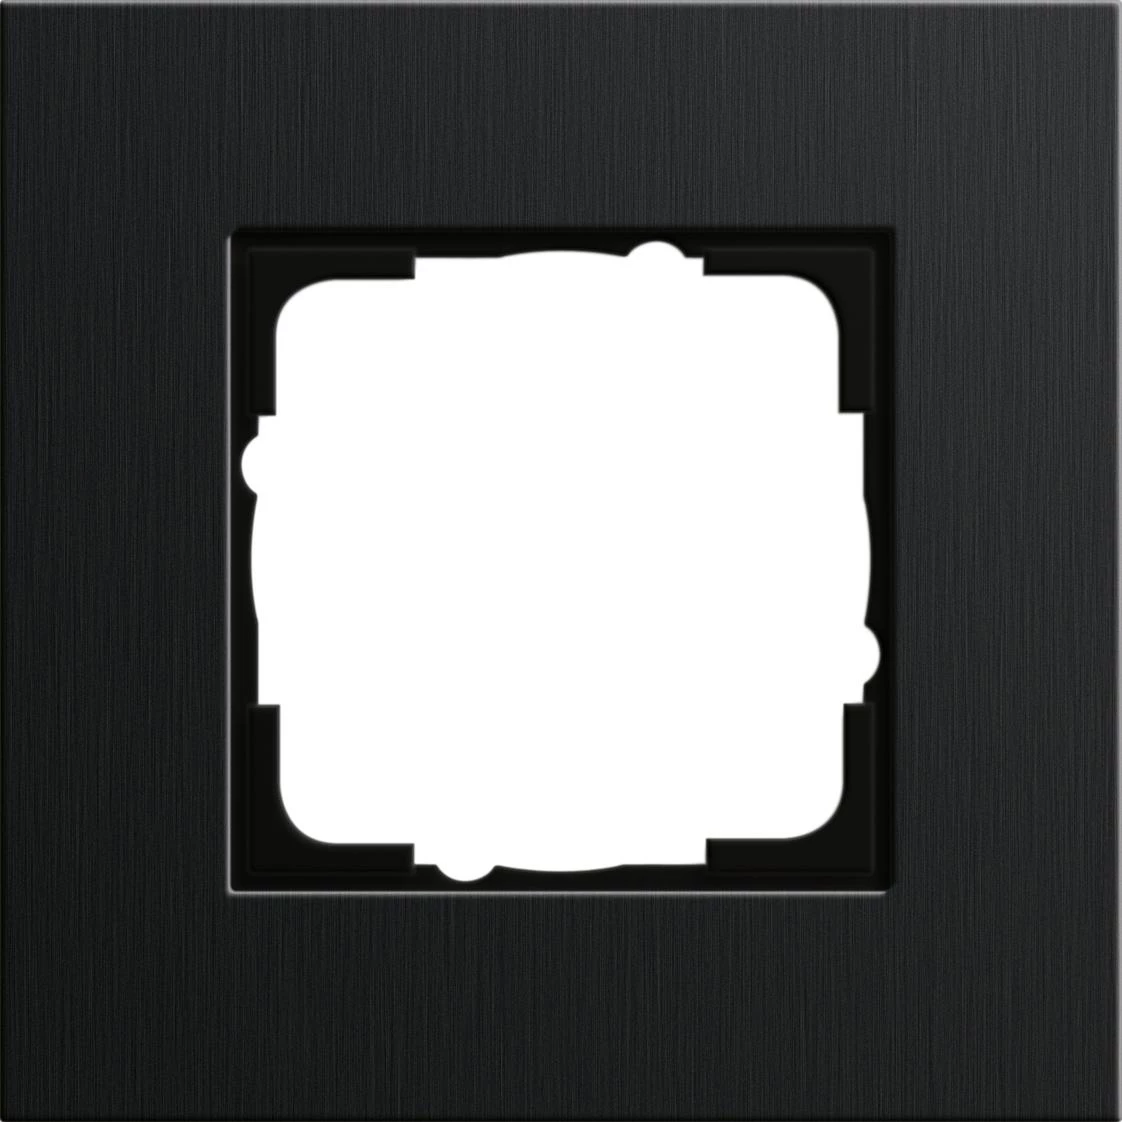  артикул 0211126 название Рамка 1-ая (одинарная), Алюминий Черный (анодированный), серия Esprit